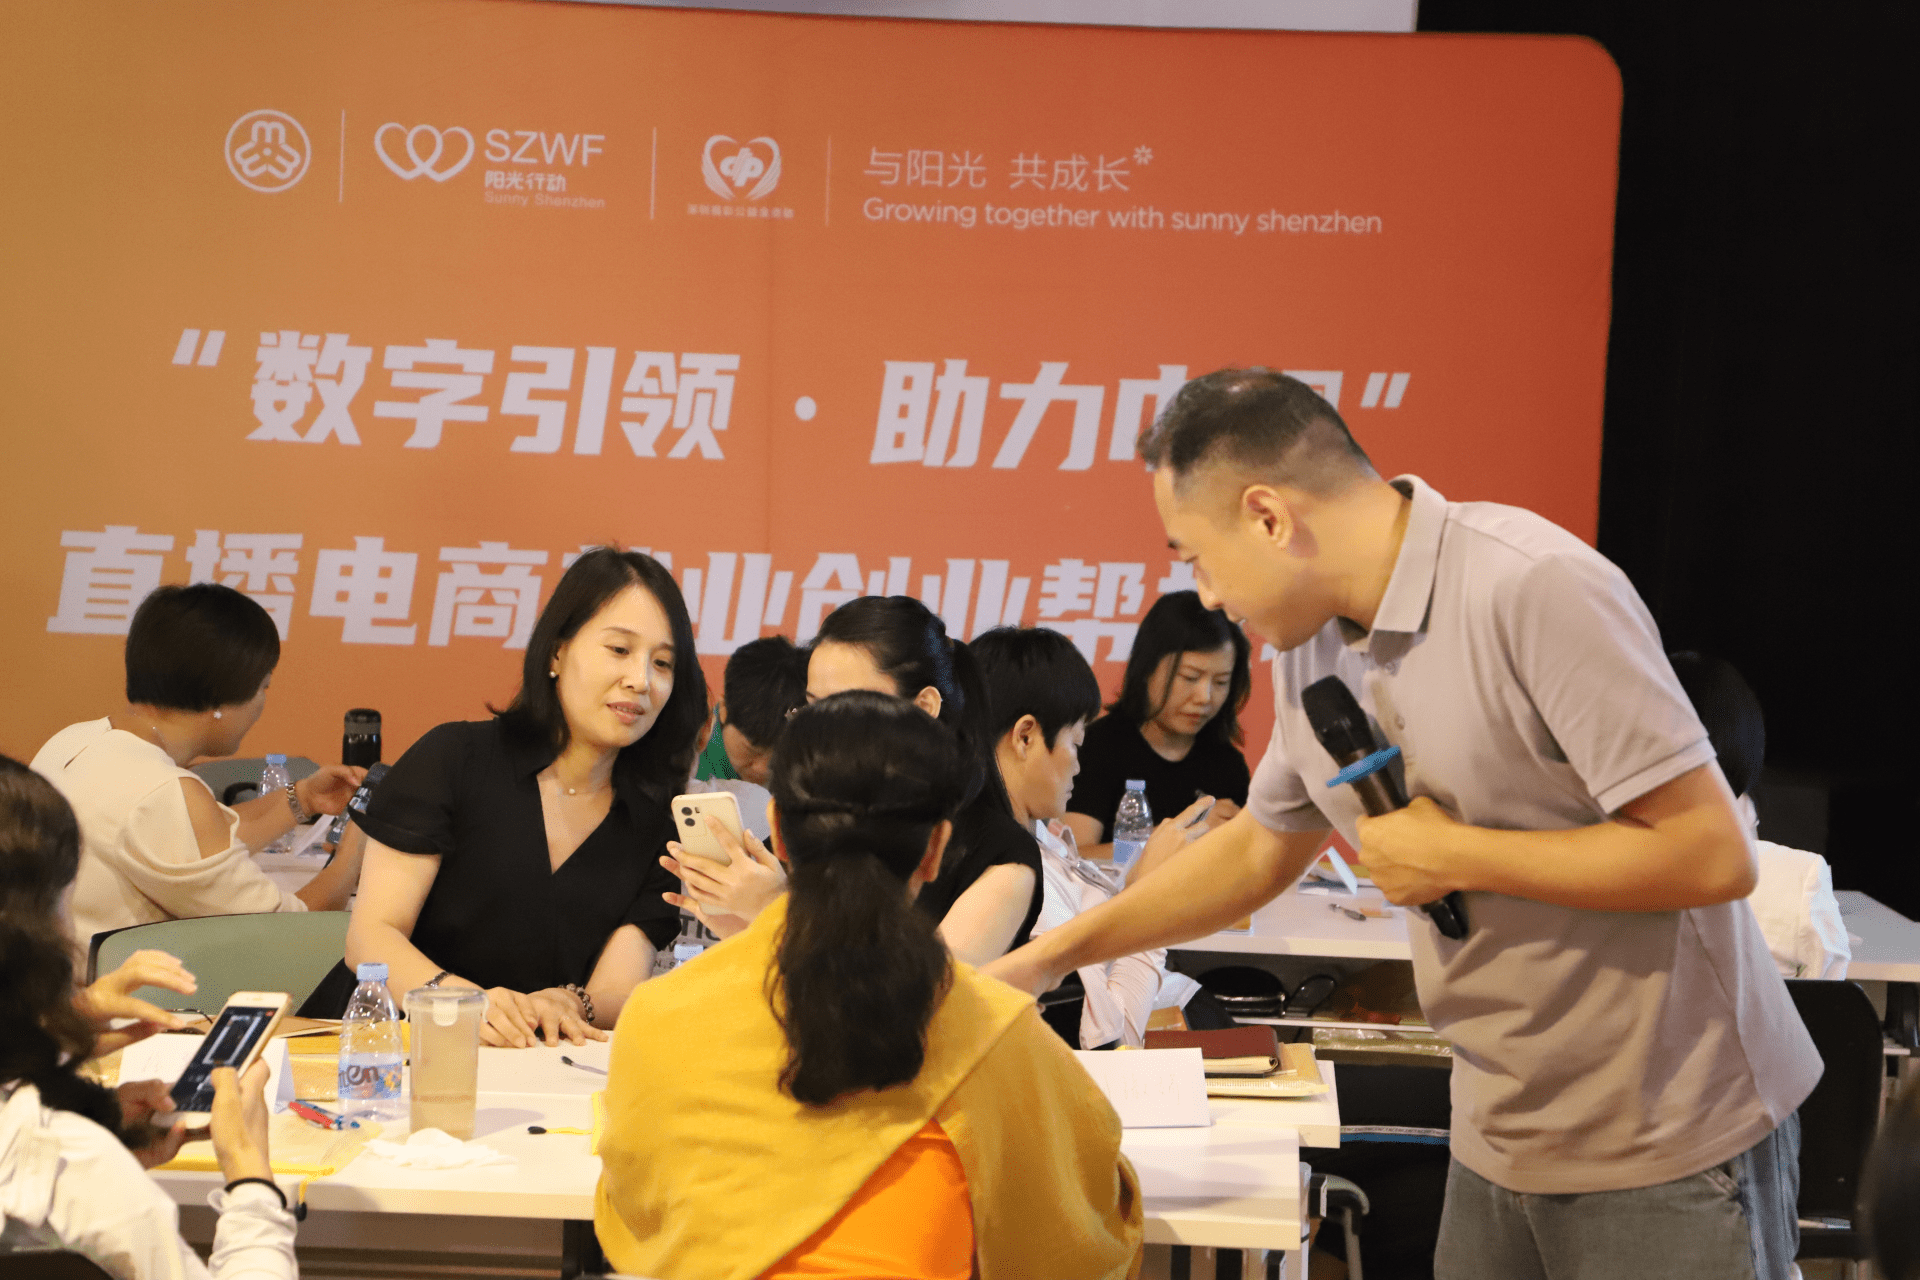 深圳妇联开展直播电商就业创业帮扶项目 服务超1.5万人次